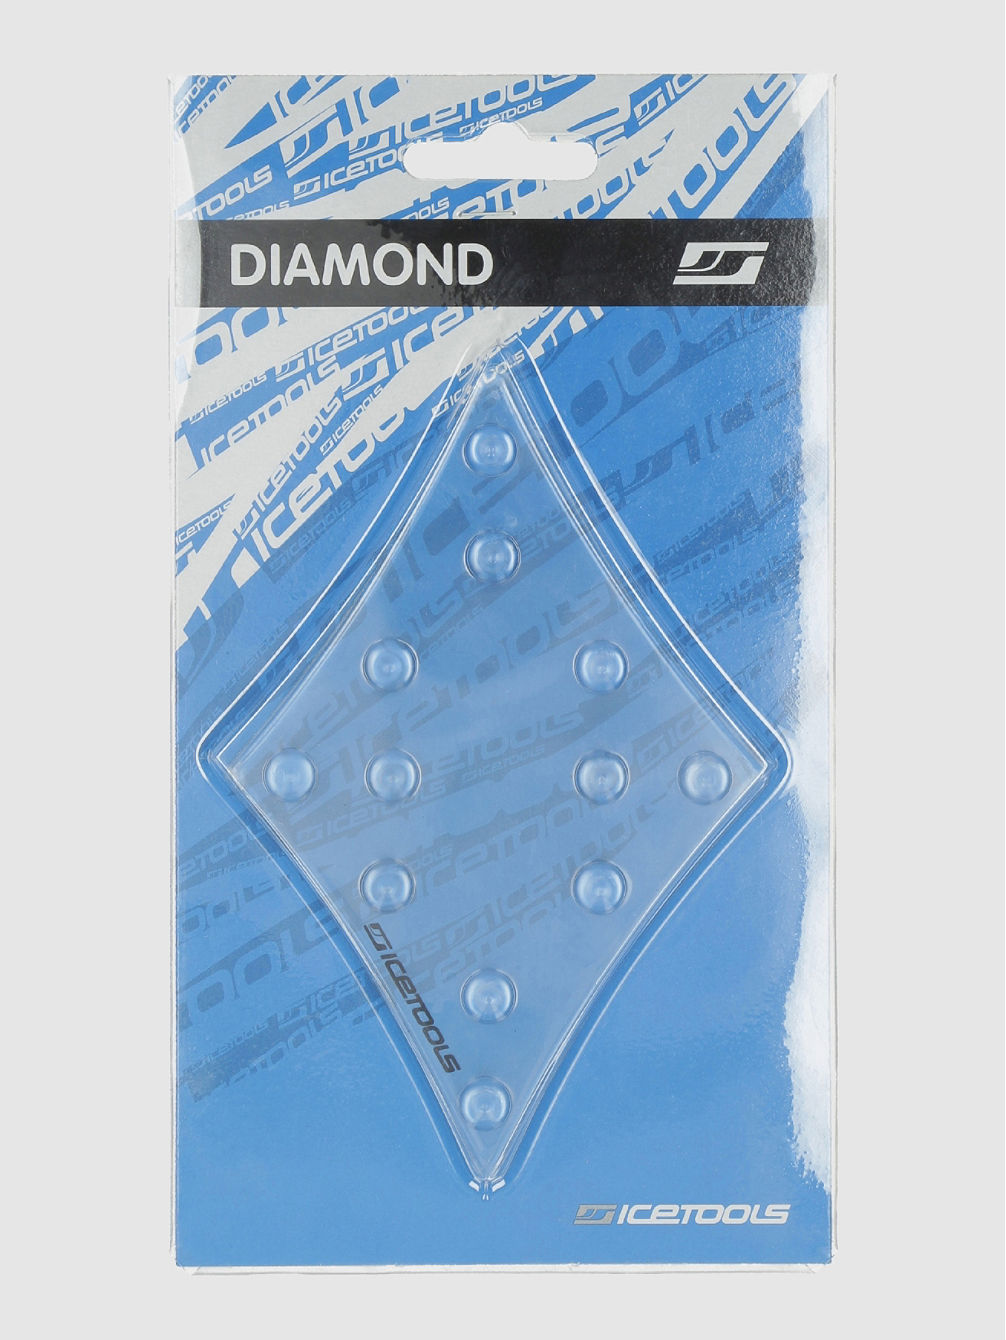 Diamond Stomp pad